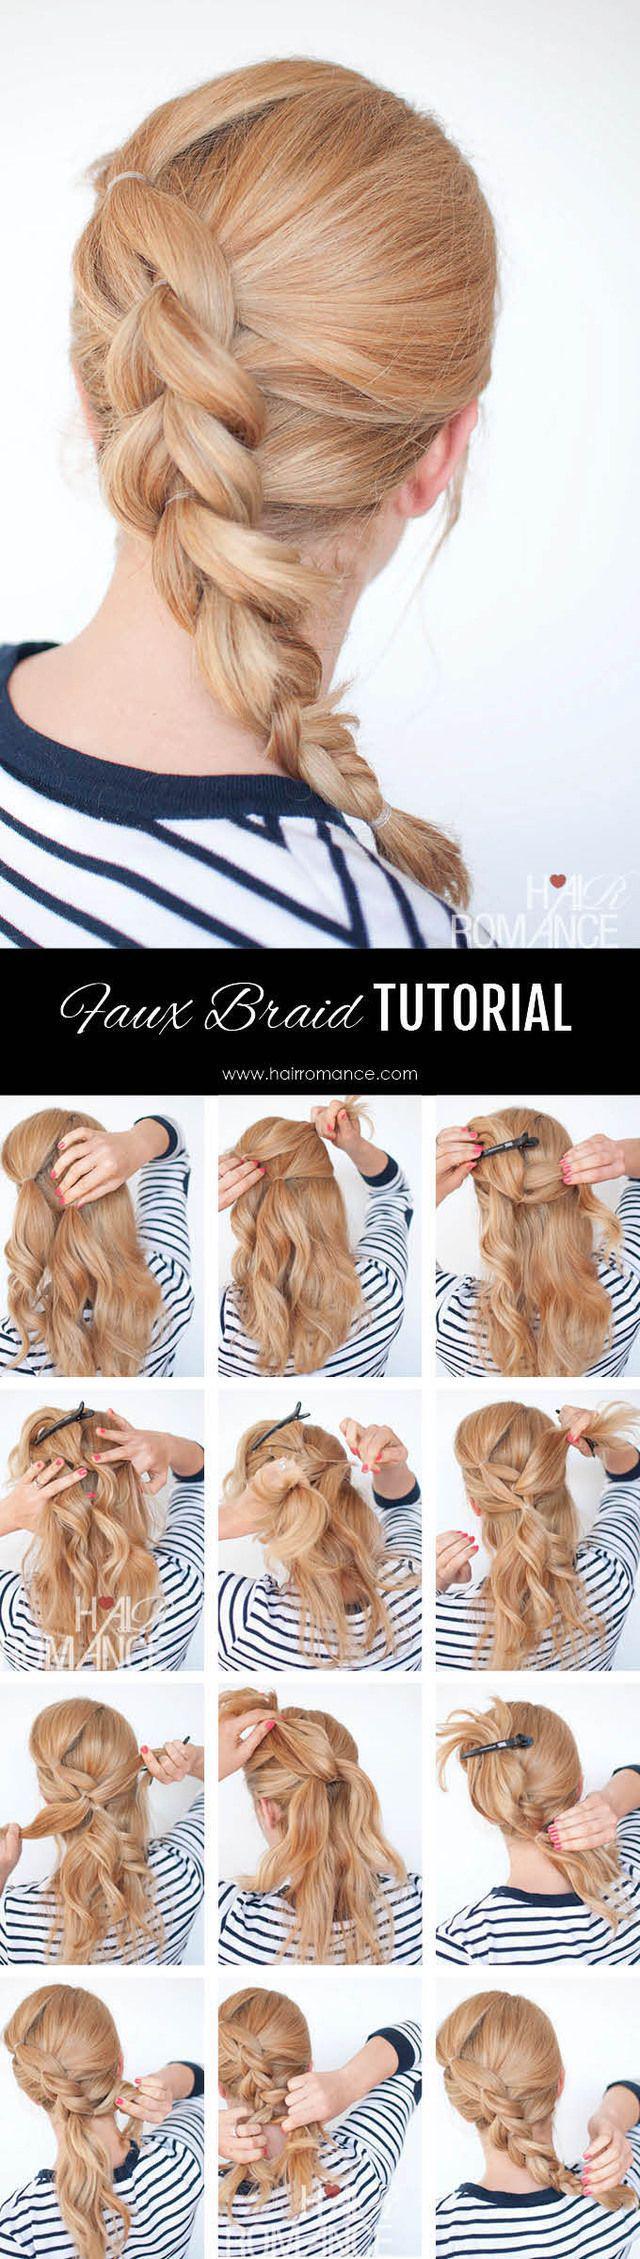 รูปภาพ:http://fashionsy.com/wp-content/uploads/2015/12/Hair-Romance-Braid-tutorial-cheat-the-faux-braid-Pull-through-braid-tutorial-5.jpg